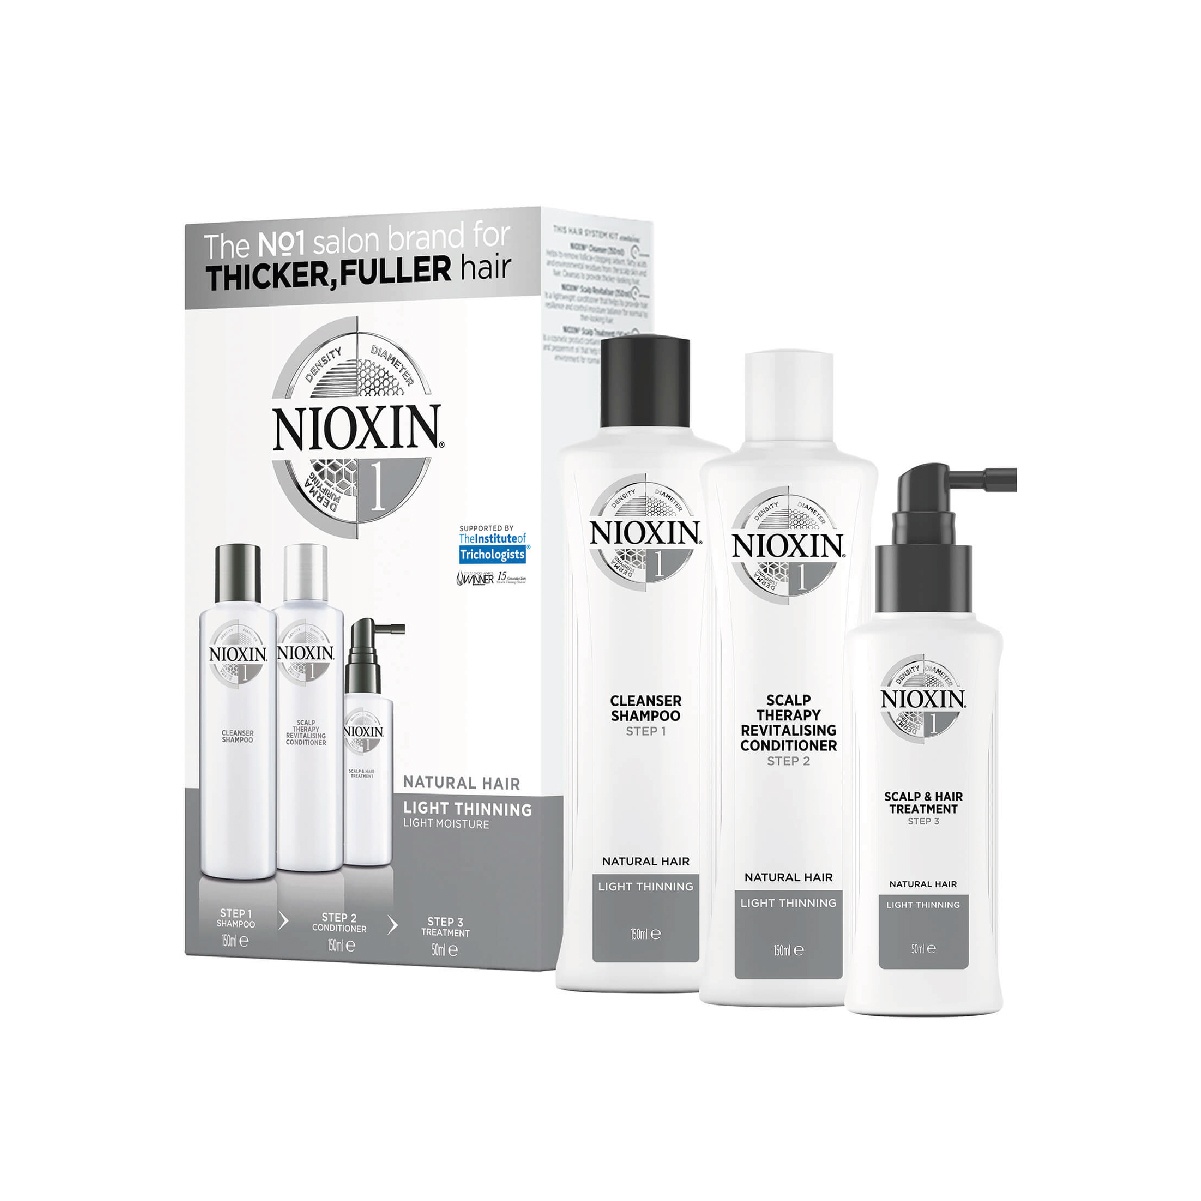 Nioxin - Clicar para os Packs de cabelos naturais